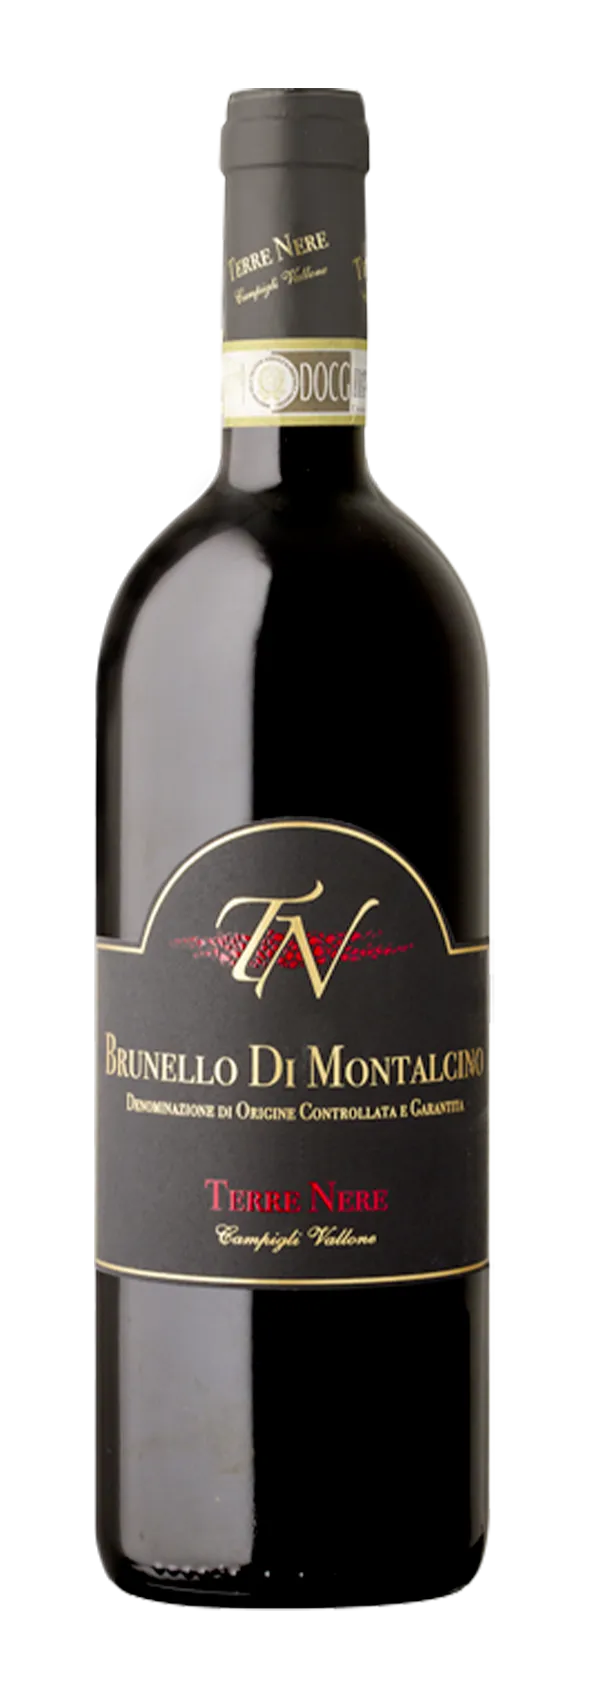 Bottle of Terre Nere Campigli Vallone Brunello di Montalcino Riserva from search results